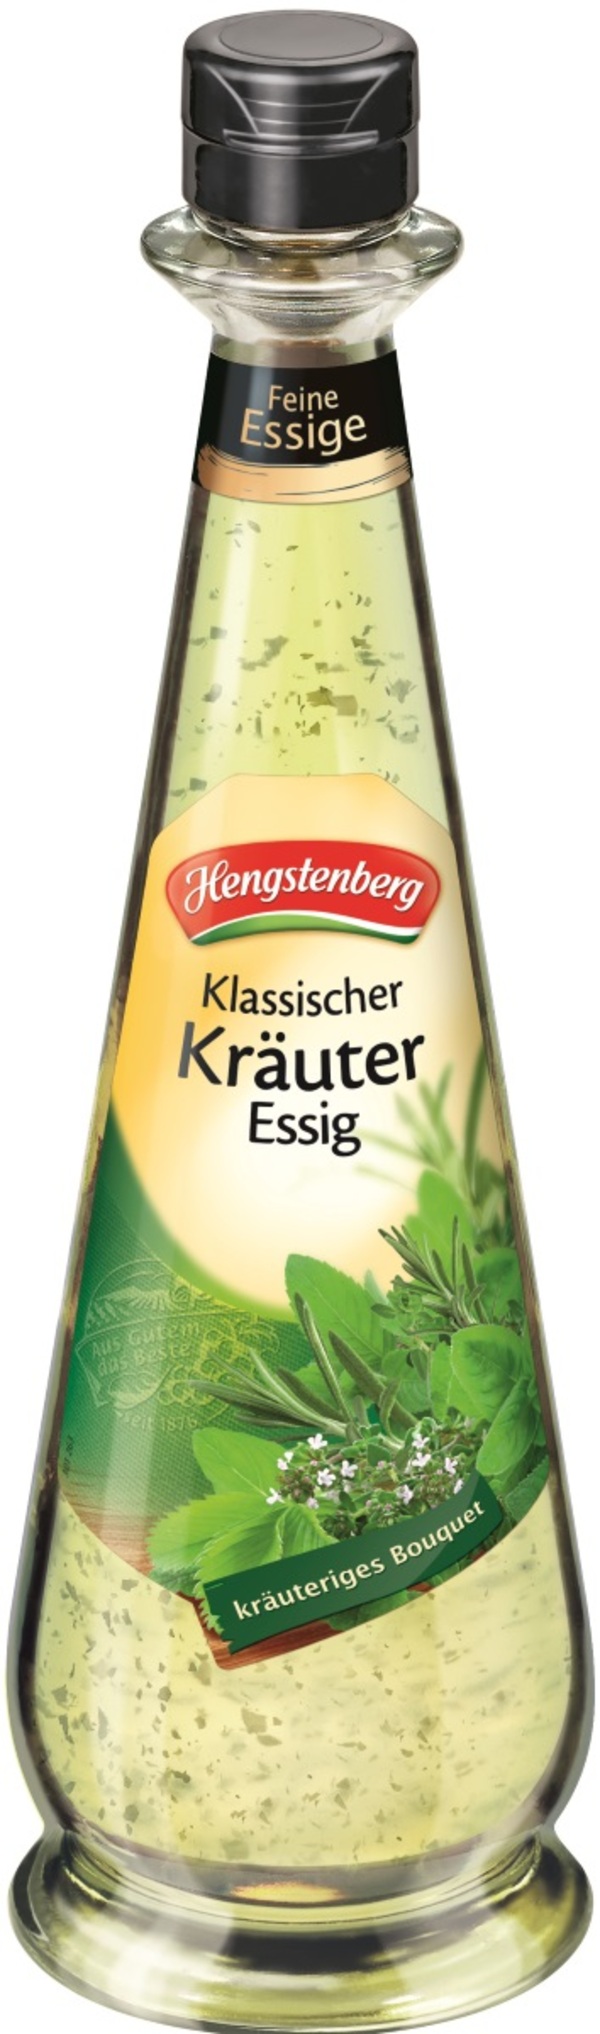 Hengstenberg Klassischer Kräuter Essig 500 ml